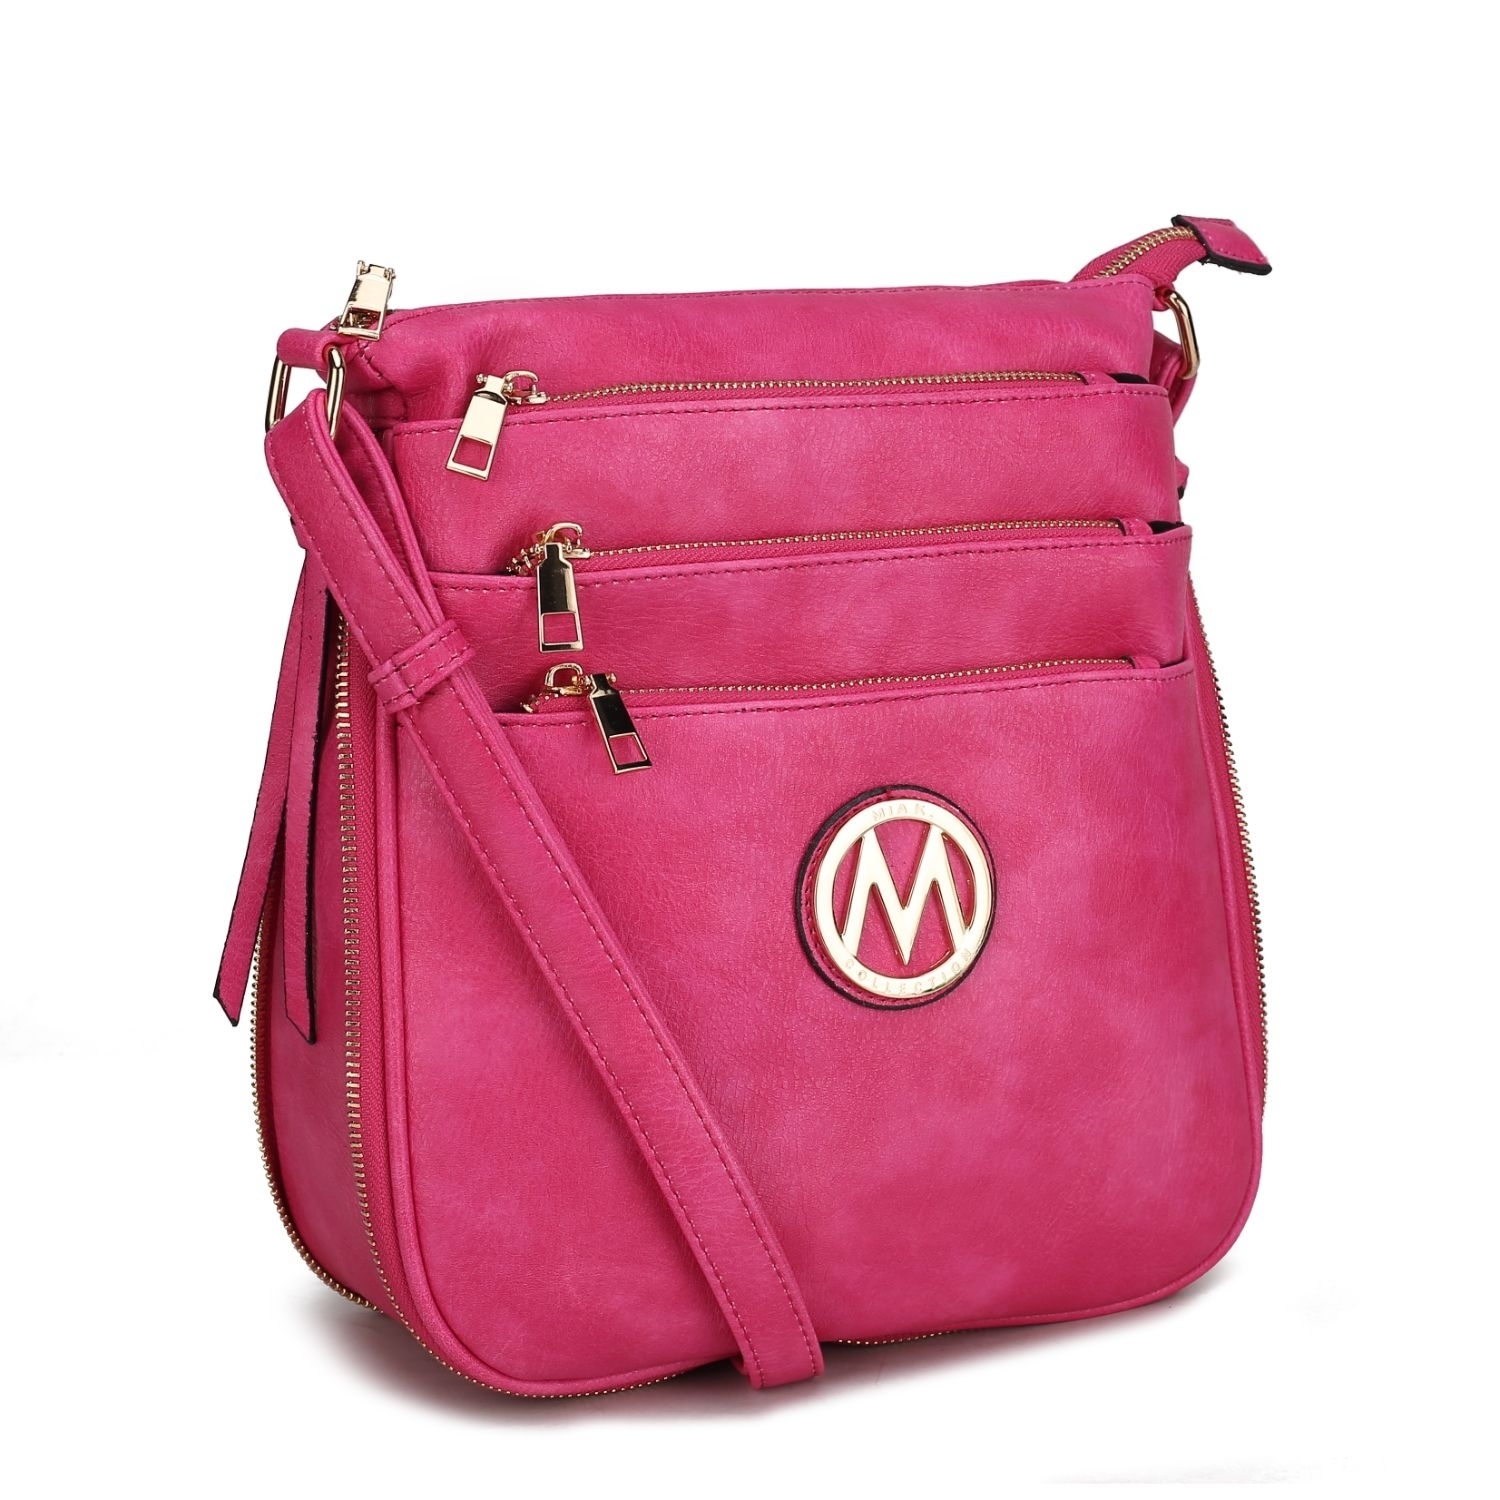 MKF Collection Salome Expandable Crossbody Handbag By Mia K. - Fuchsia